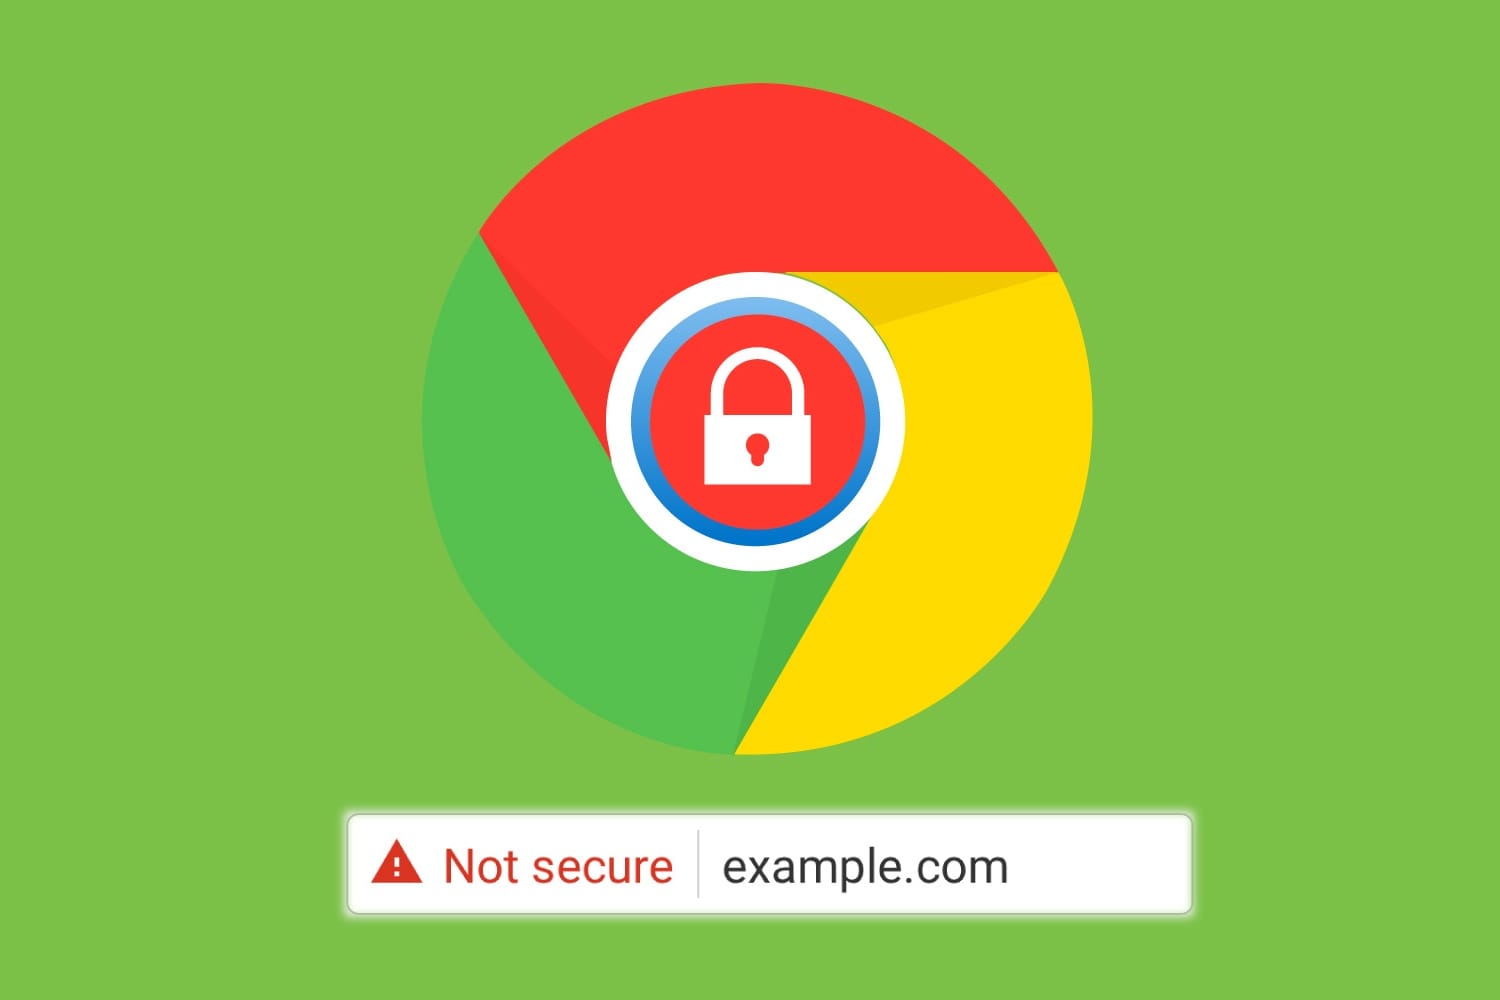 Браузер Chrome будет предупреждать о подозрительных загрузках